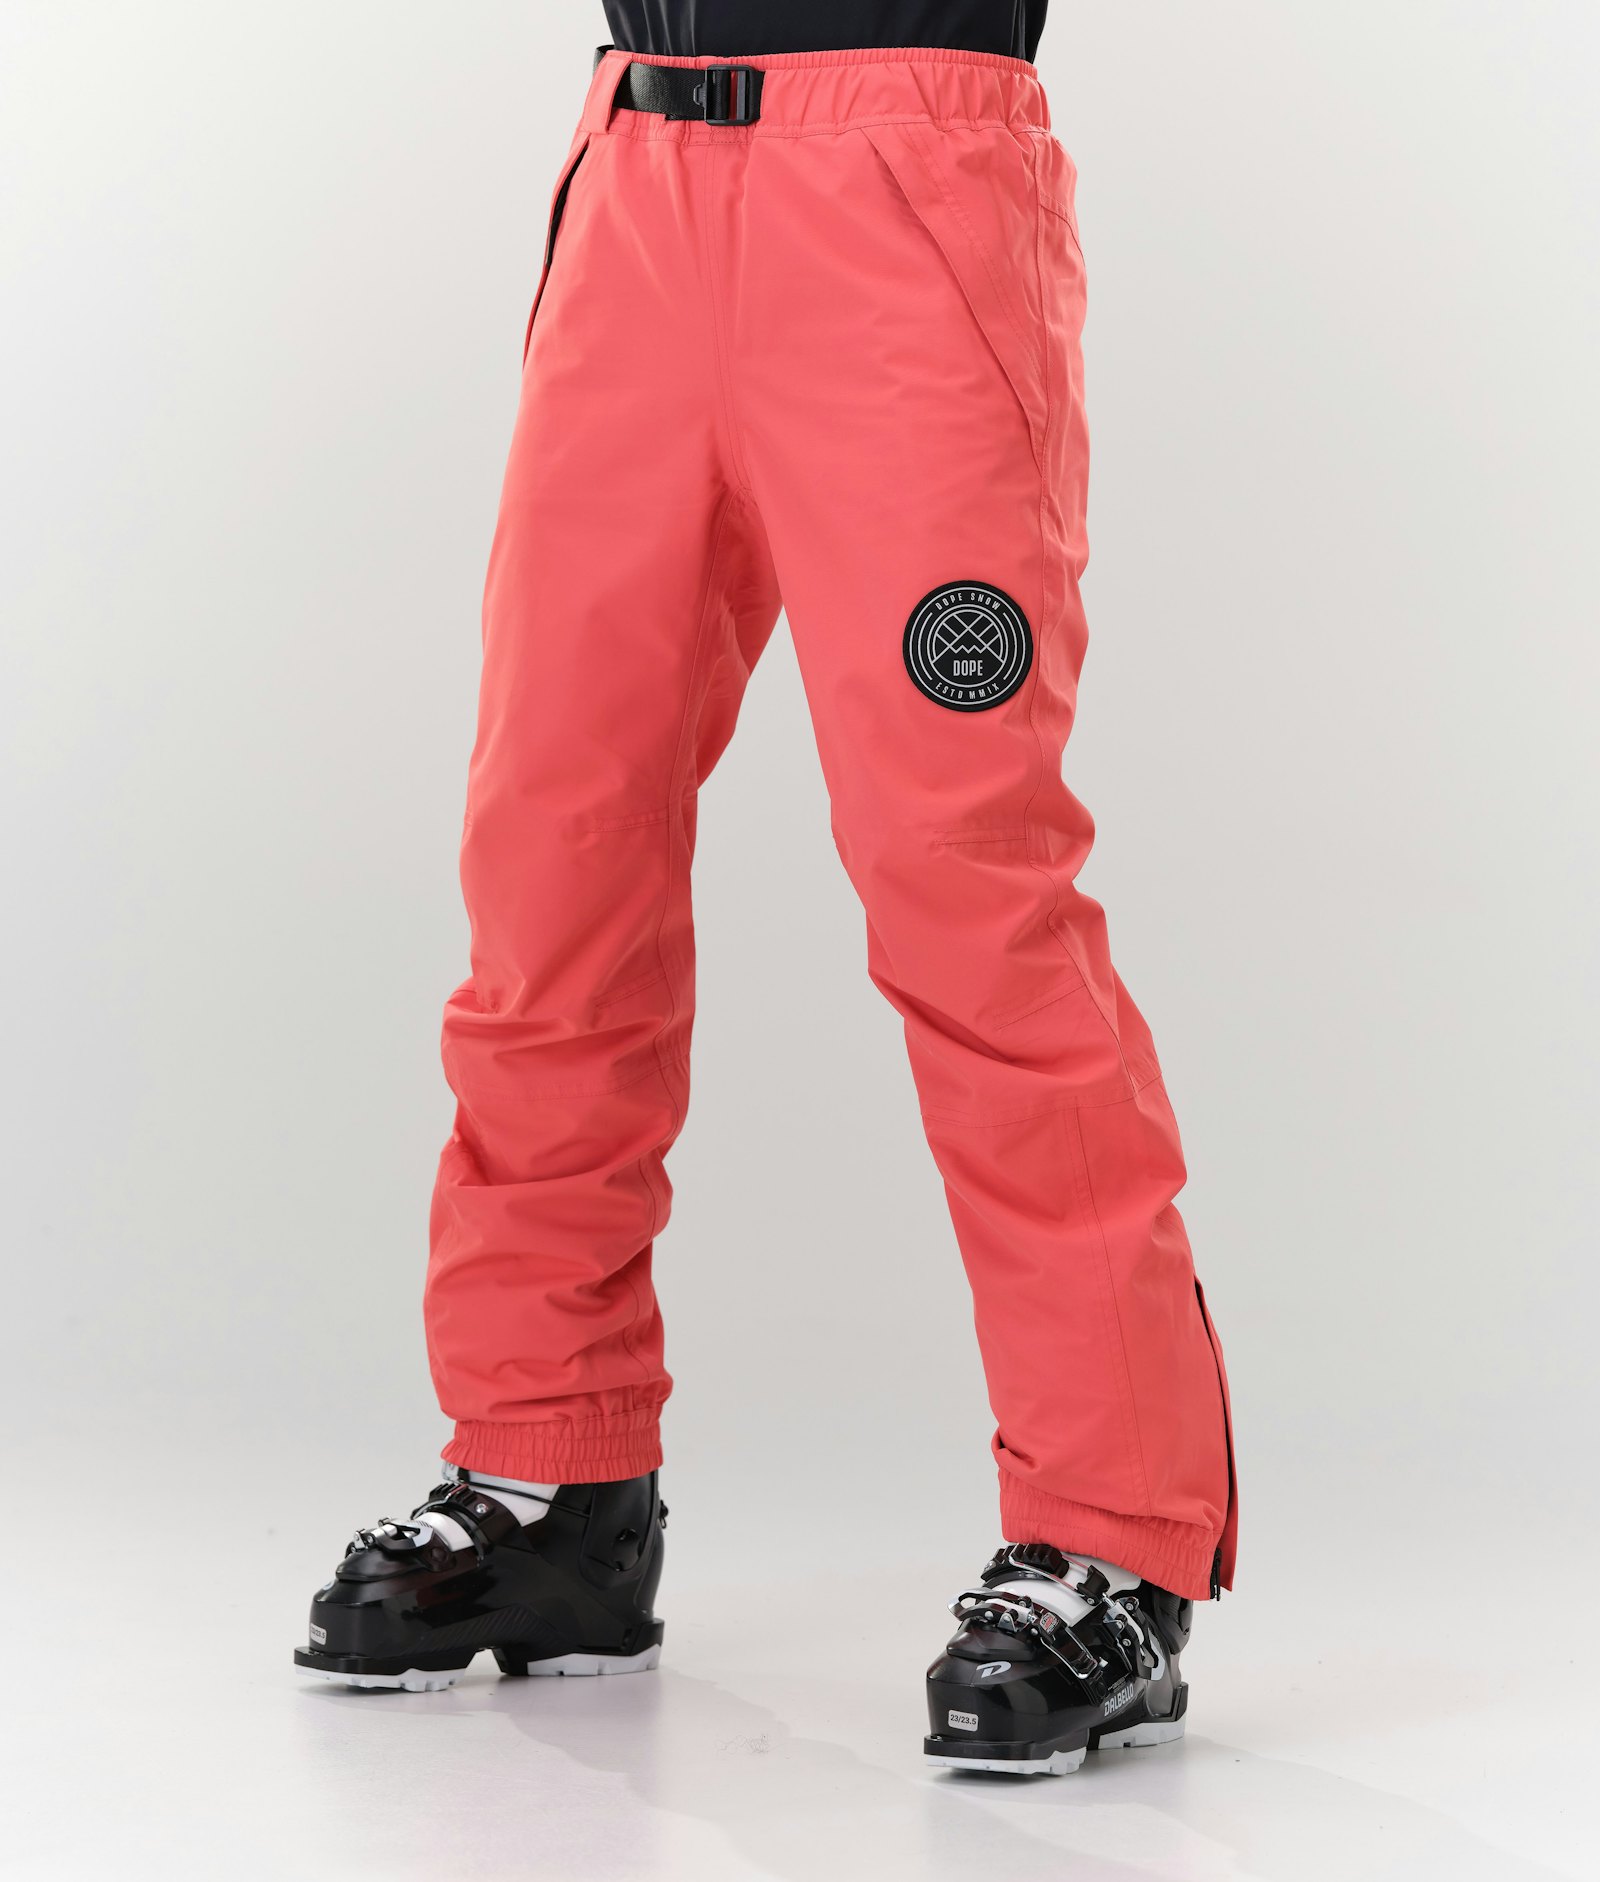 Blizzard W 2020 Pantalon de Ski Femme Coral